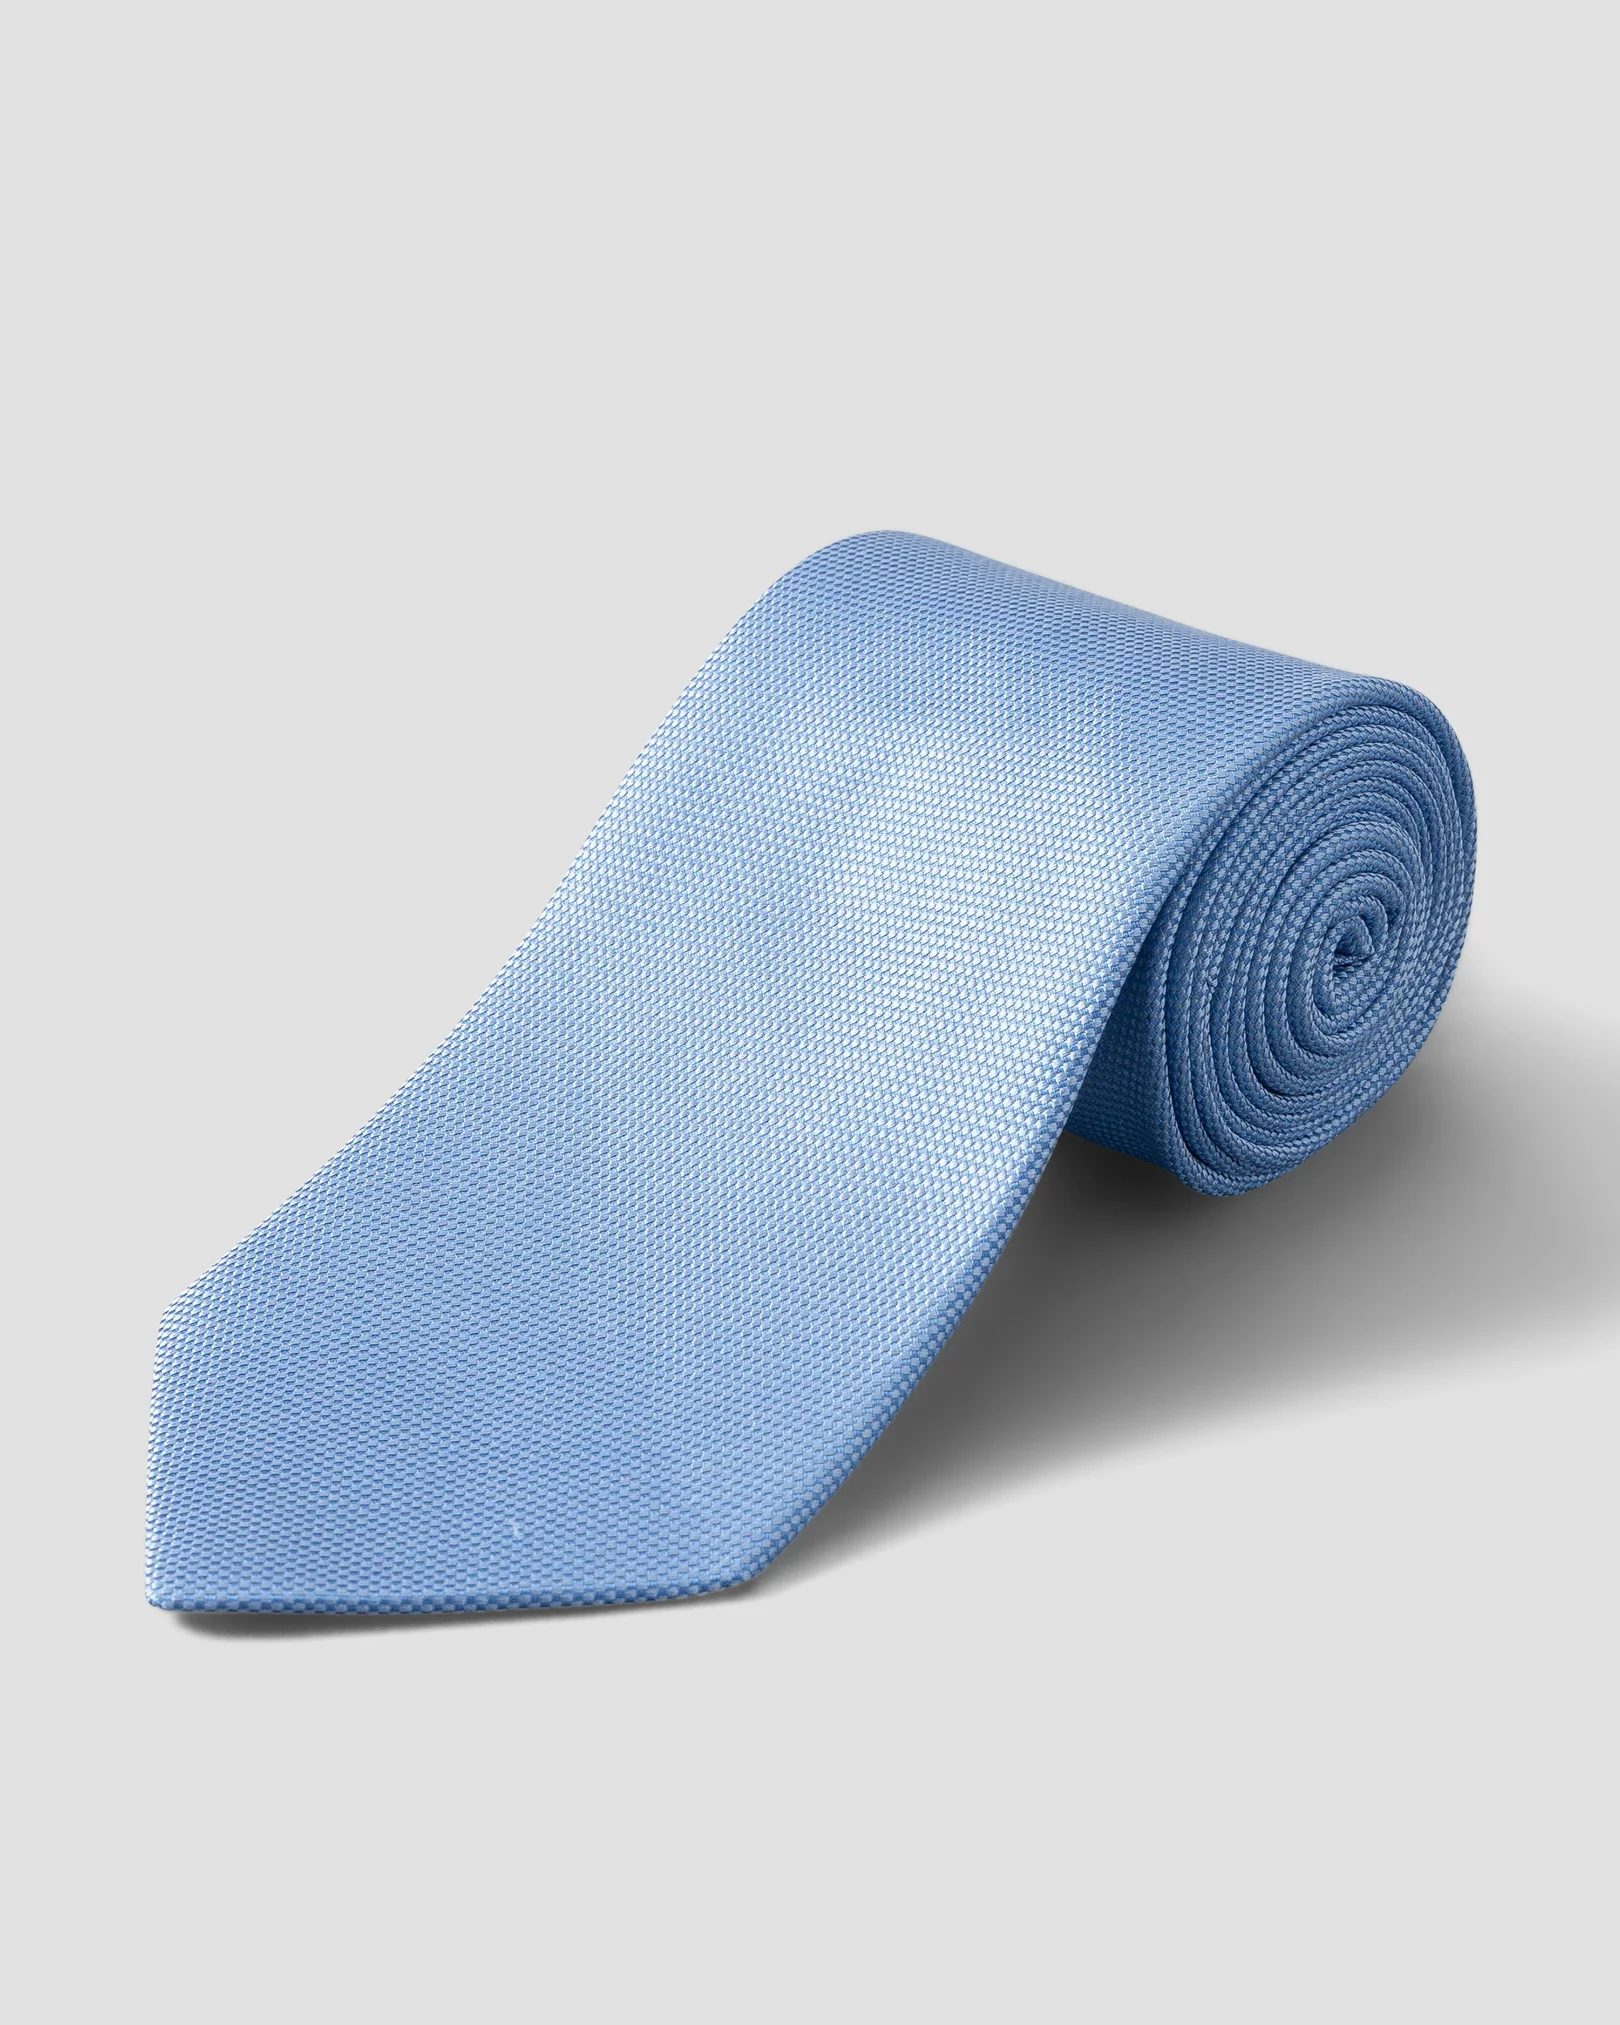 Blue Basketweave Tie